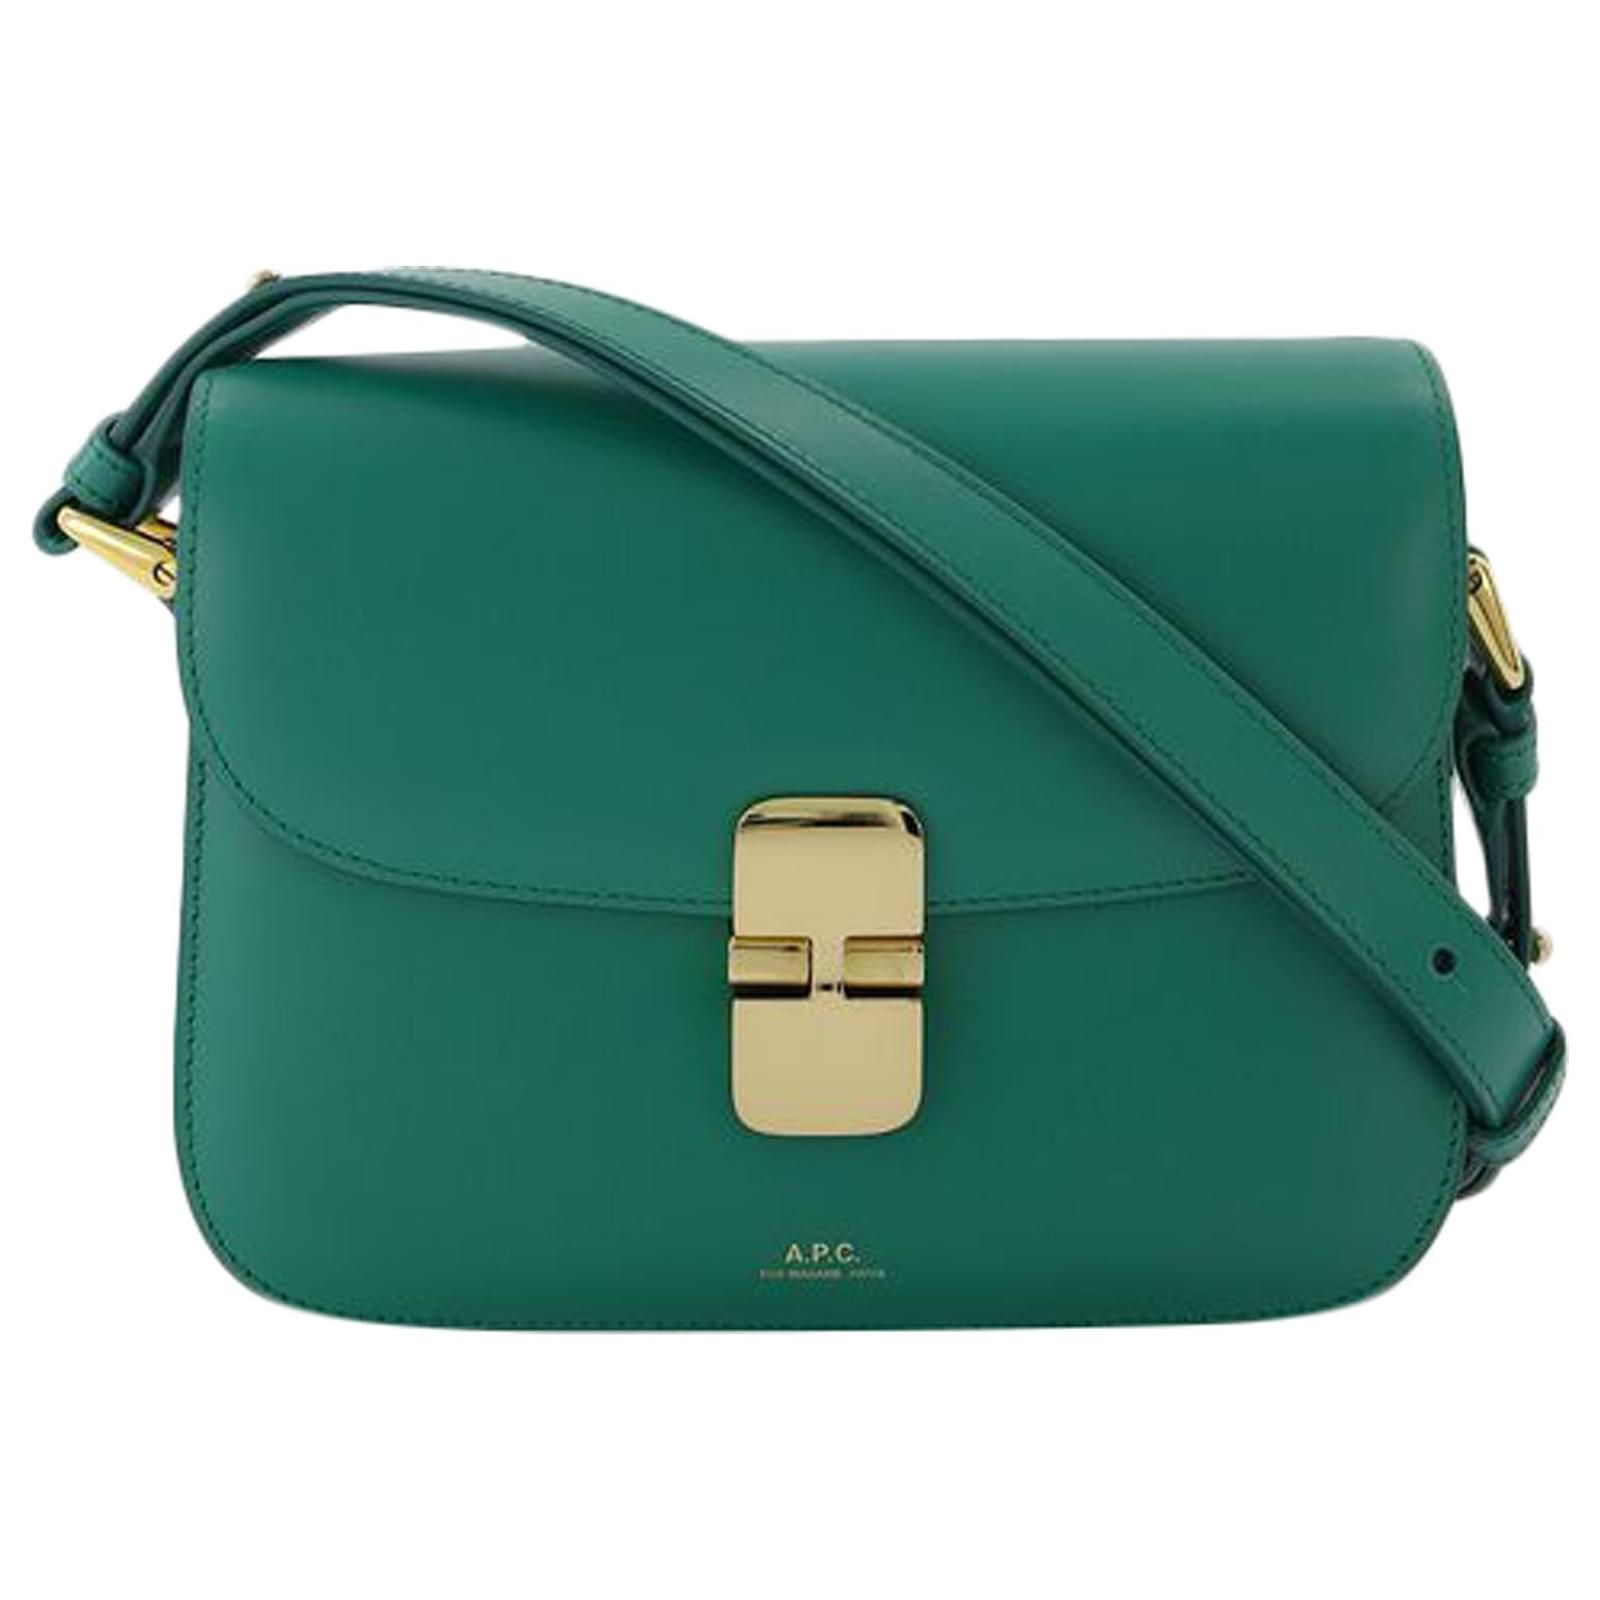 Apc Grace Small Bag in Green Leather ref.551507 - Joli Closet